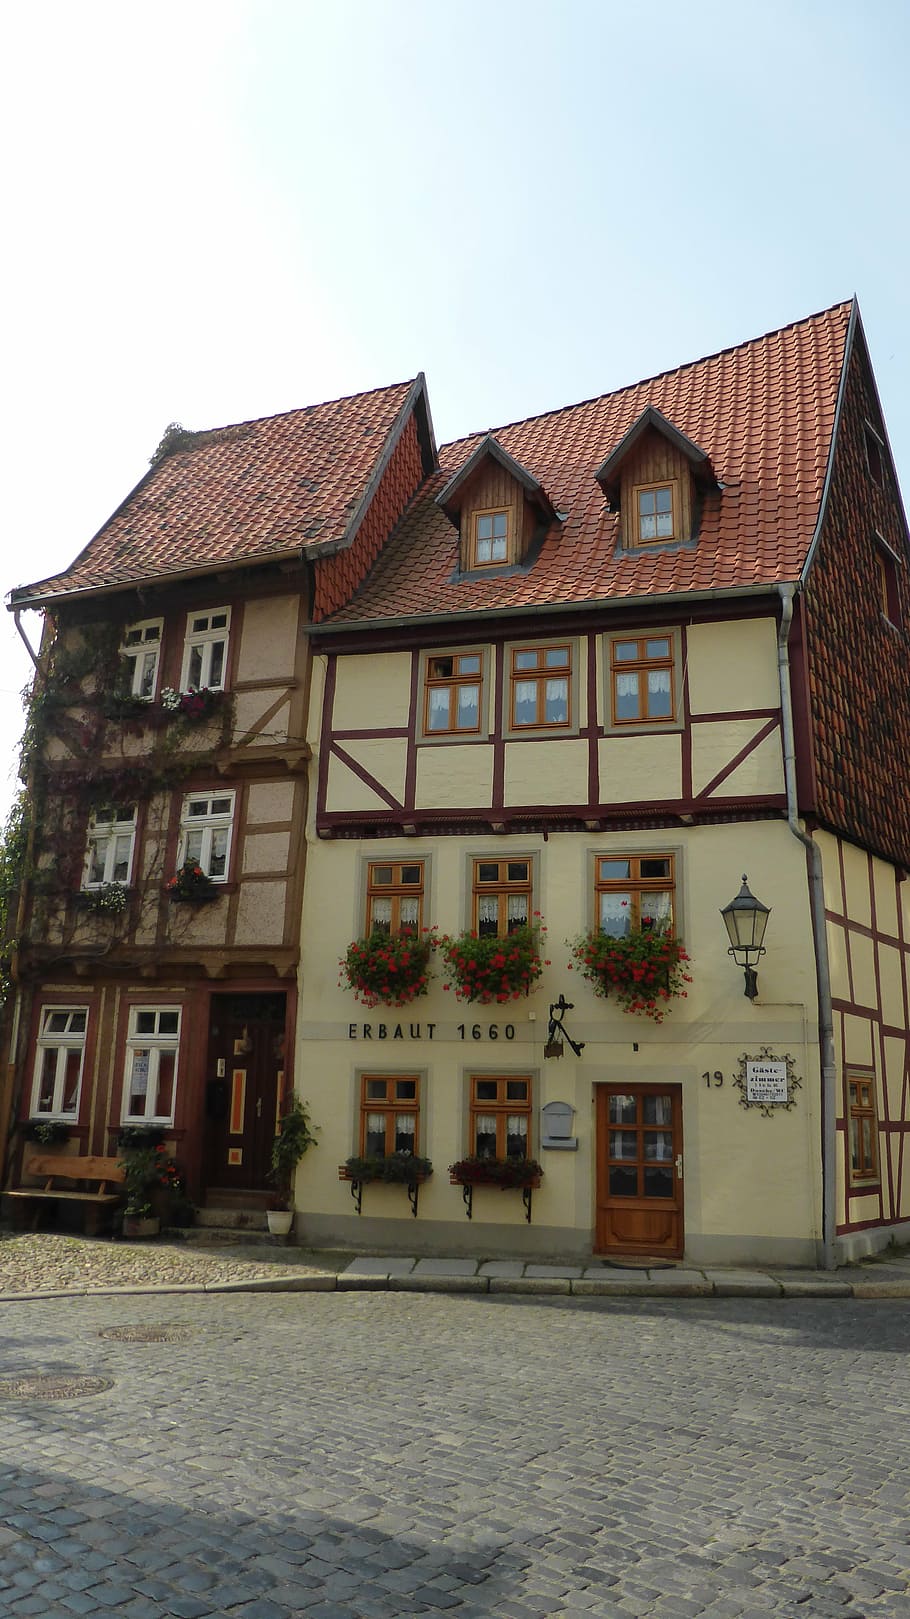 truss, home, fachwerkhaus, old town, shutters, quedlinburg, architecture, building exterior, built structure, building